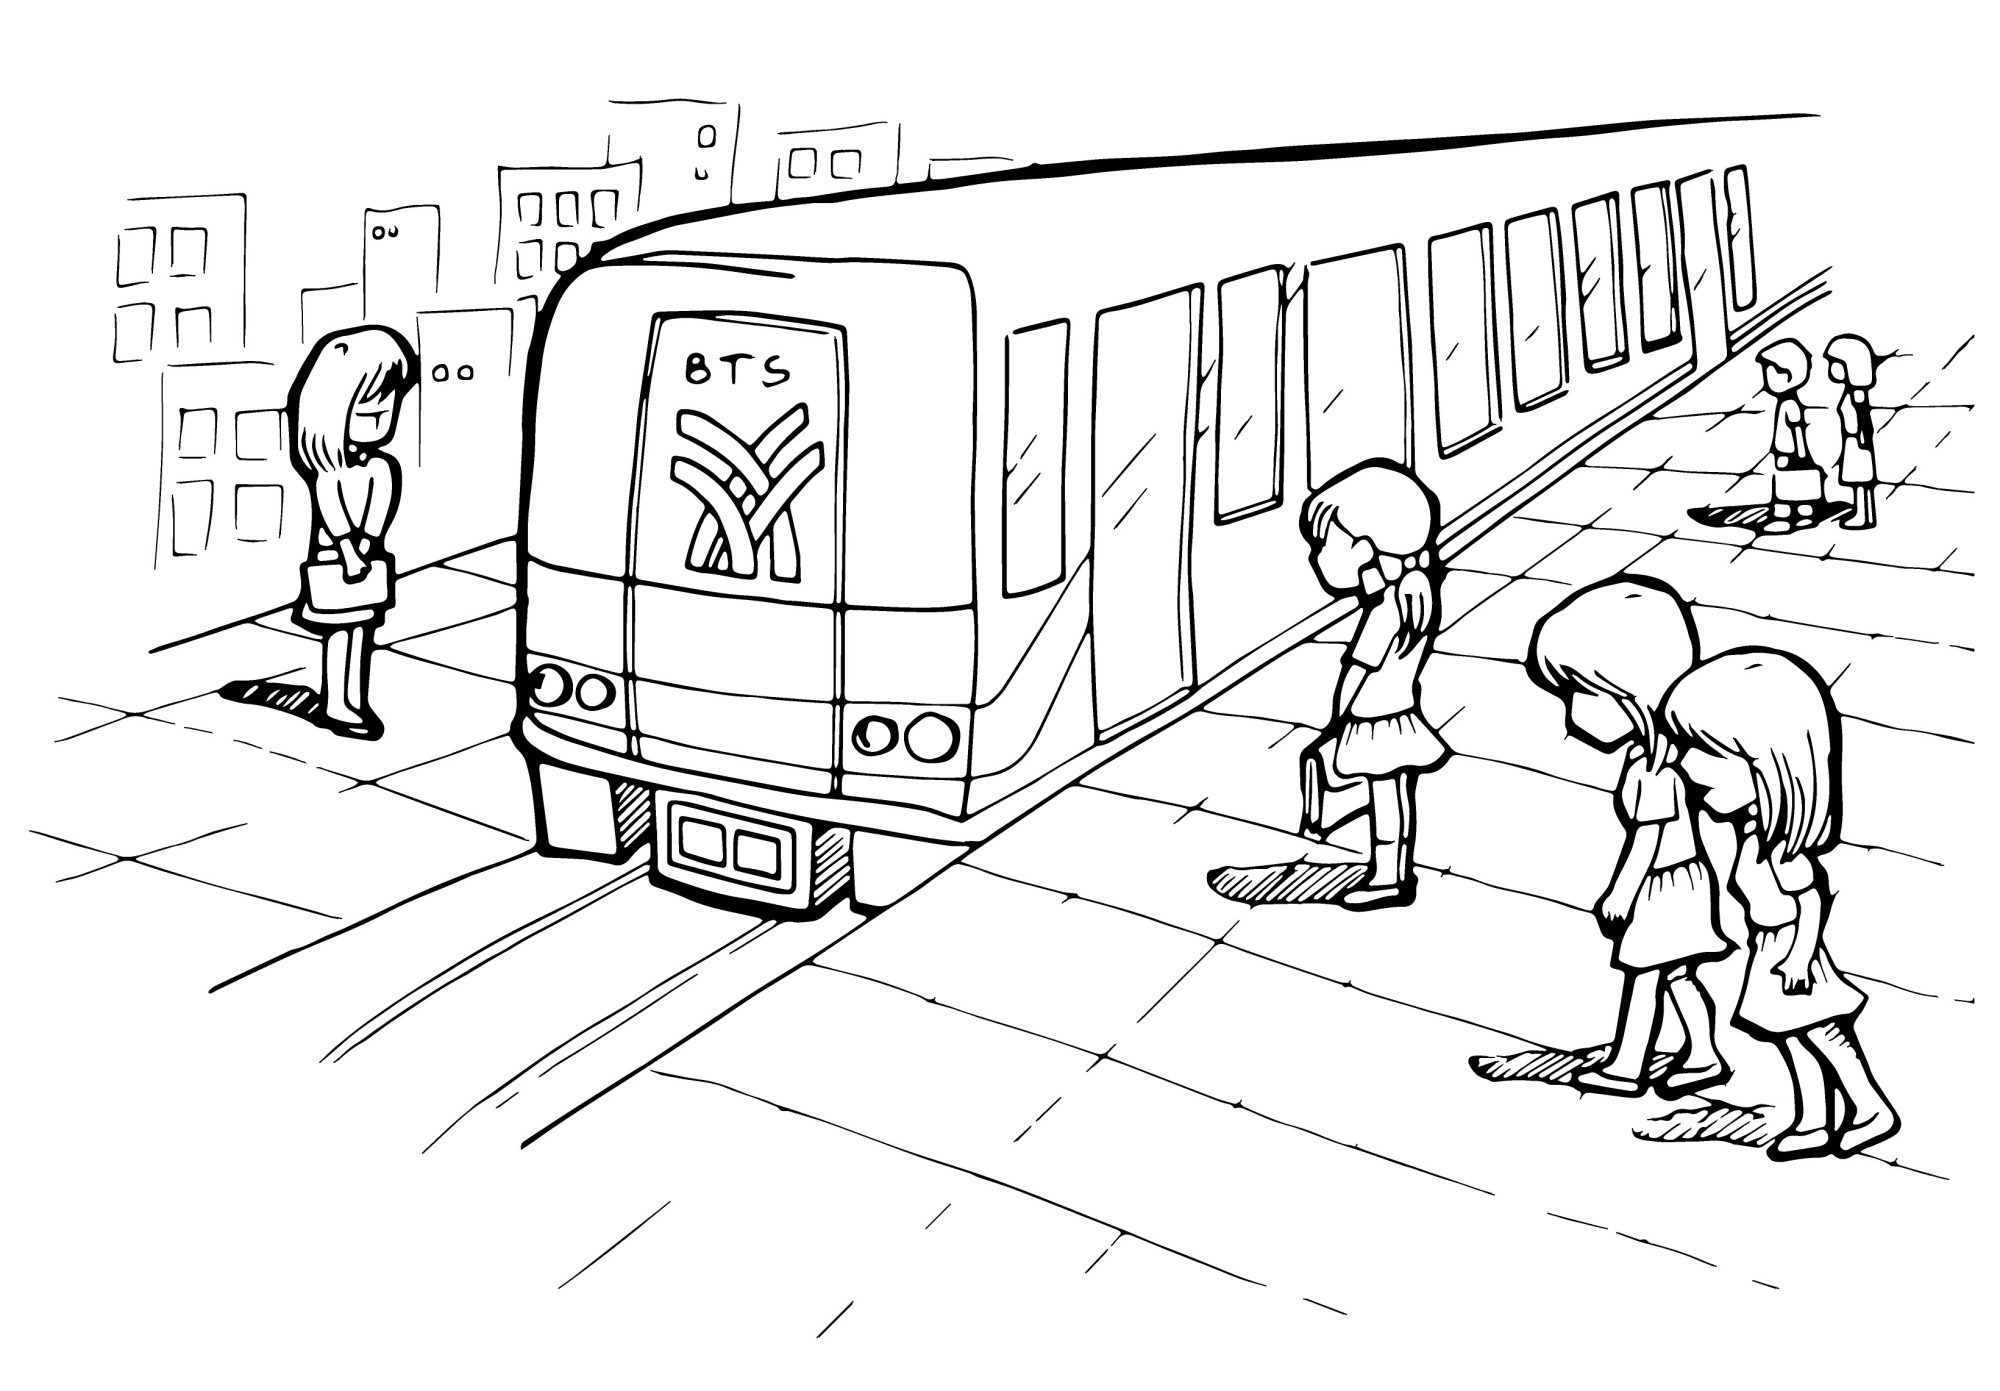 Раскраска для детей: люди стоят на станции метро рядом с поездом